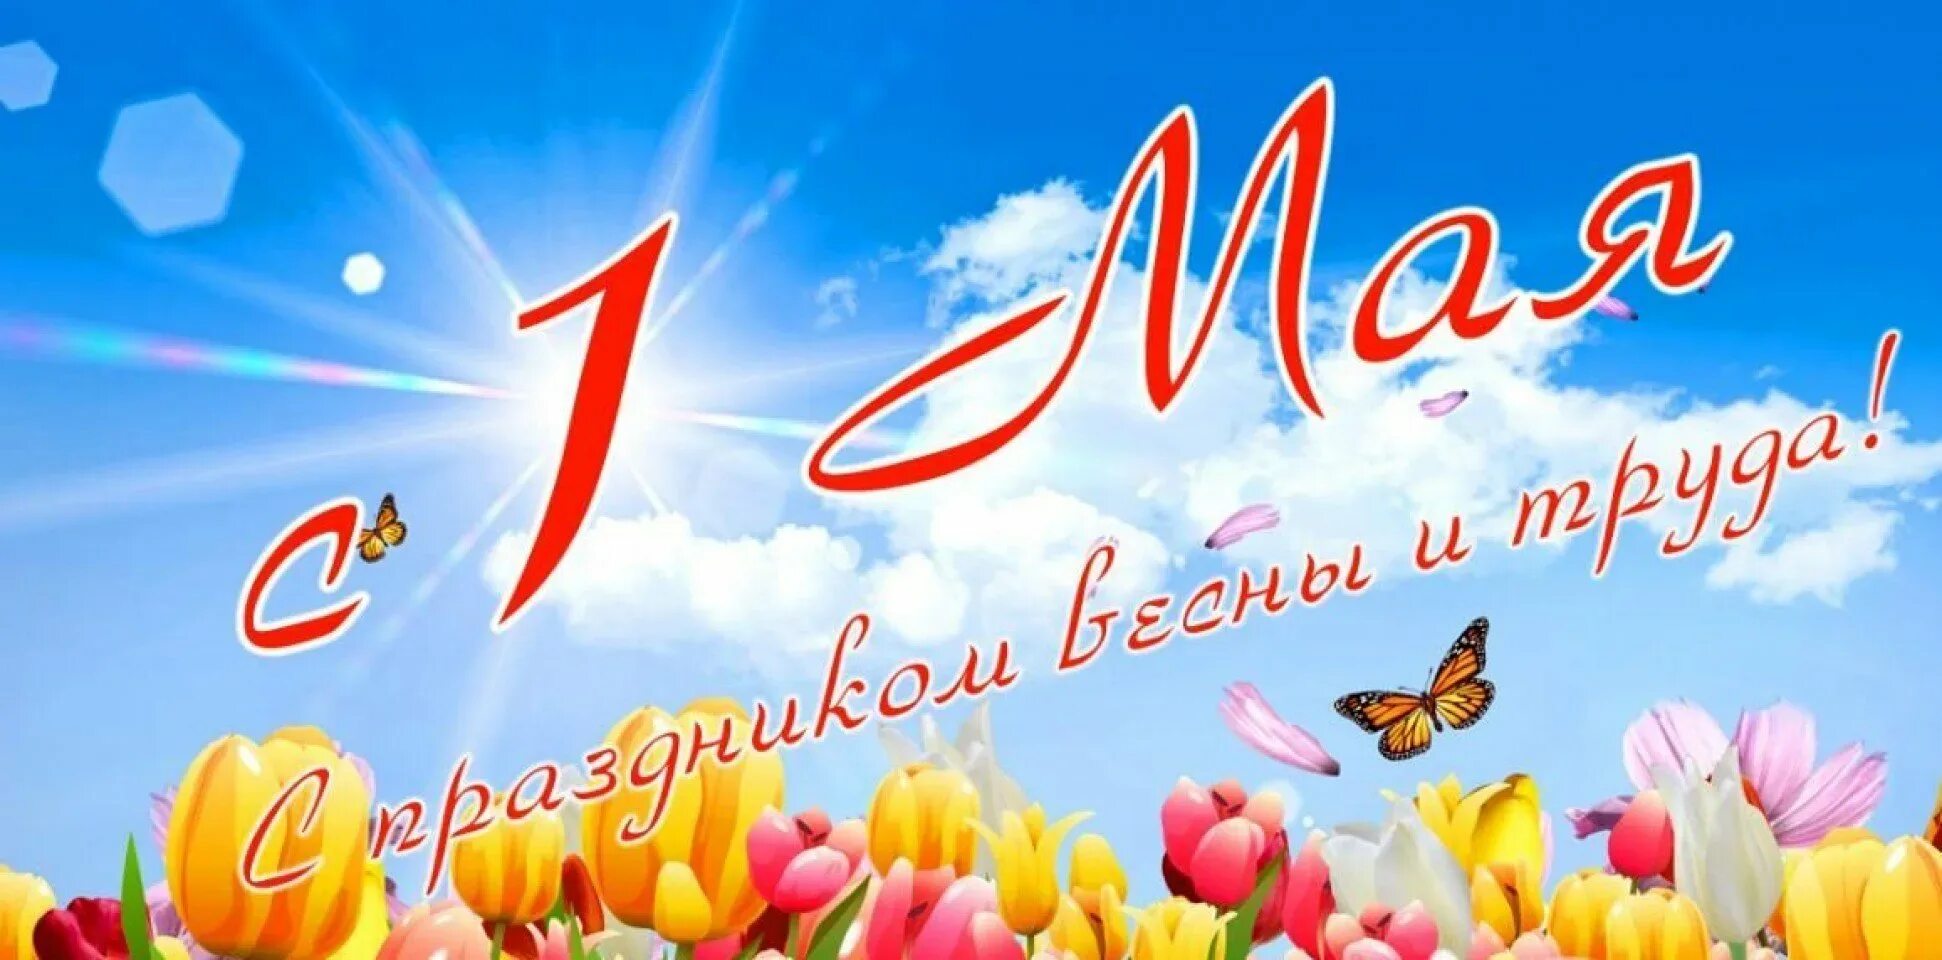 1 мая 200. 1 Мая. 1 Мая праздник весны и труда. Поздравление с 1 мая. 1 Мая праздник.